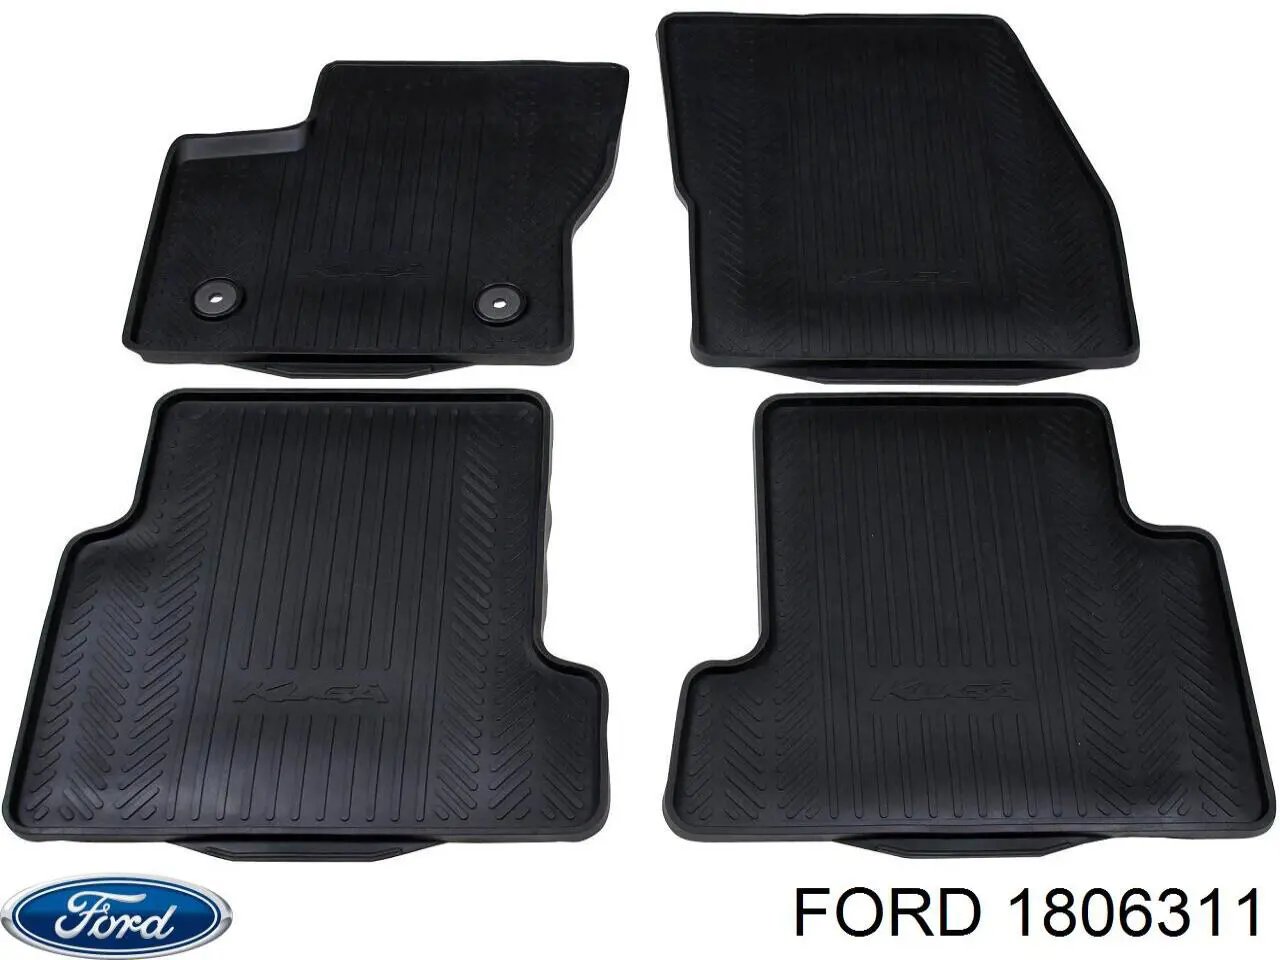 1806311 Ford tapetes dianteiros + traseiros, kit